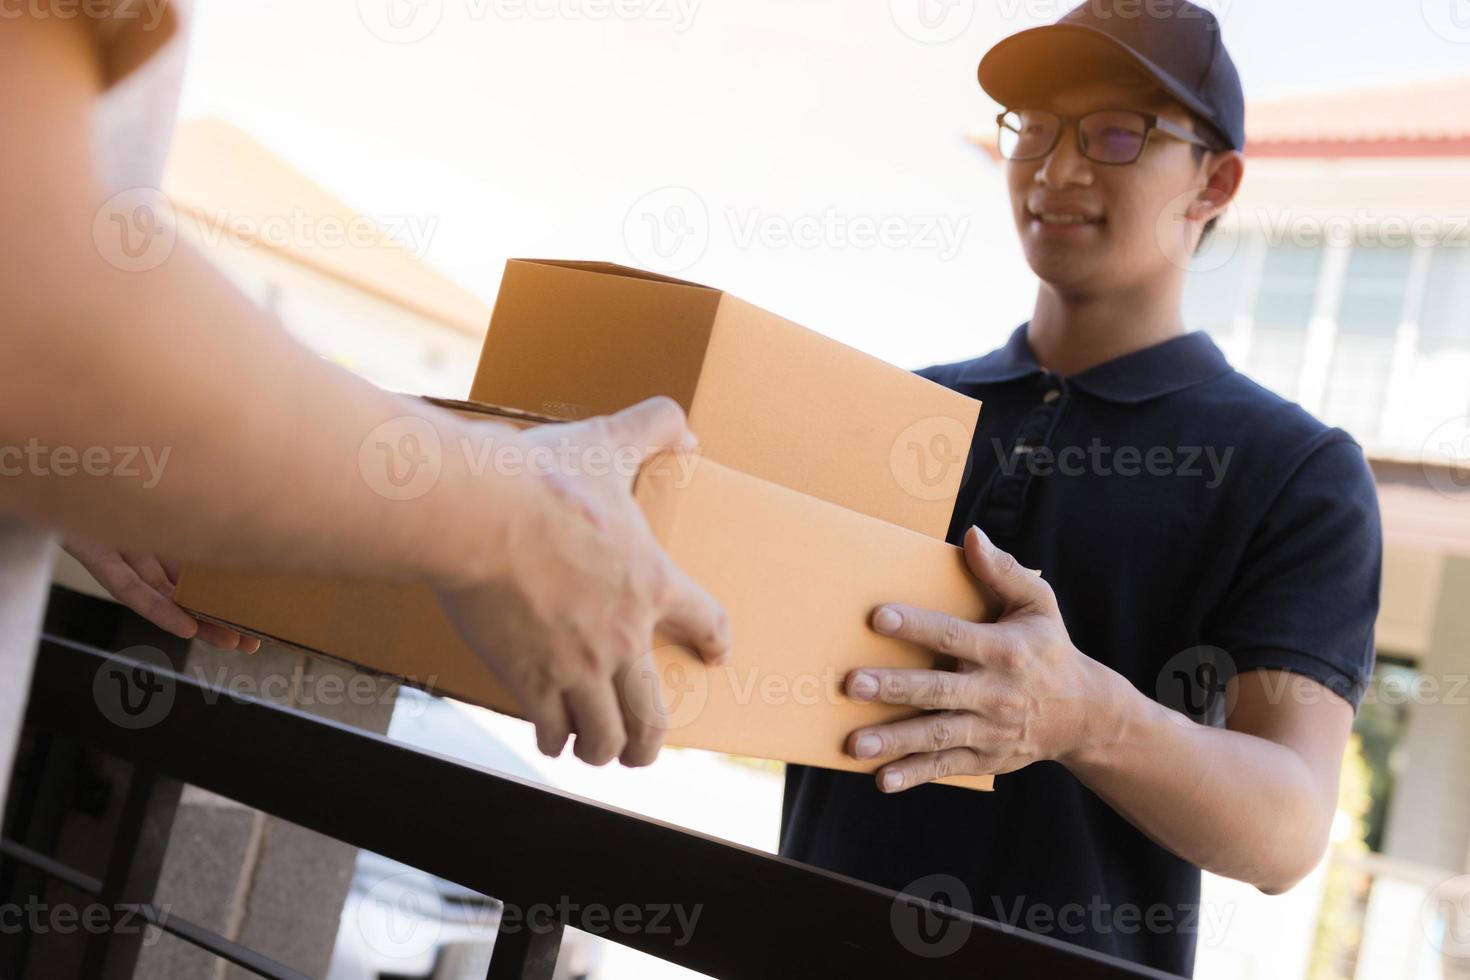 närbild av händer lastpersonal levererar kartonger med paket inuti till mottagarens hand. foto